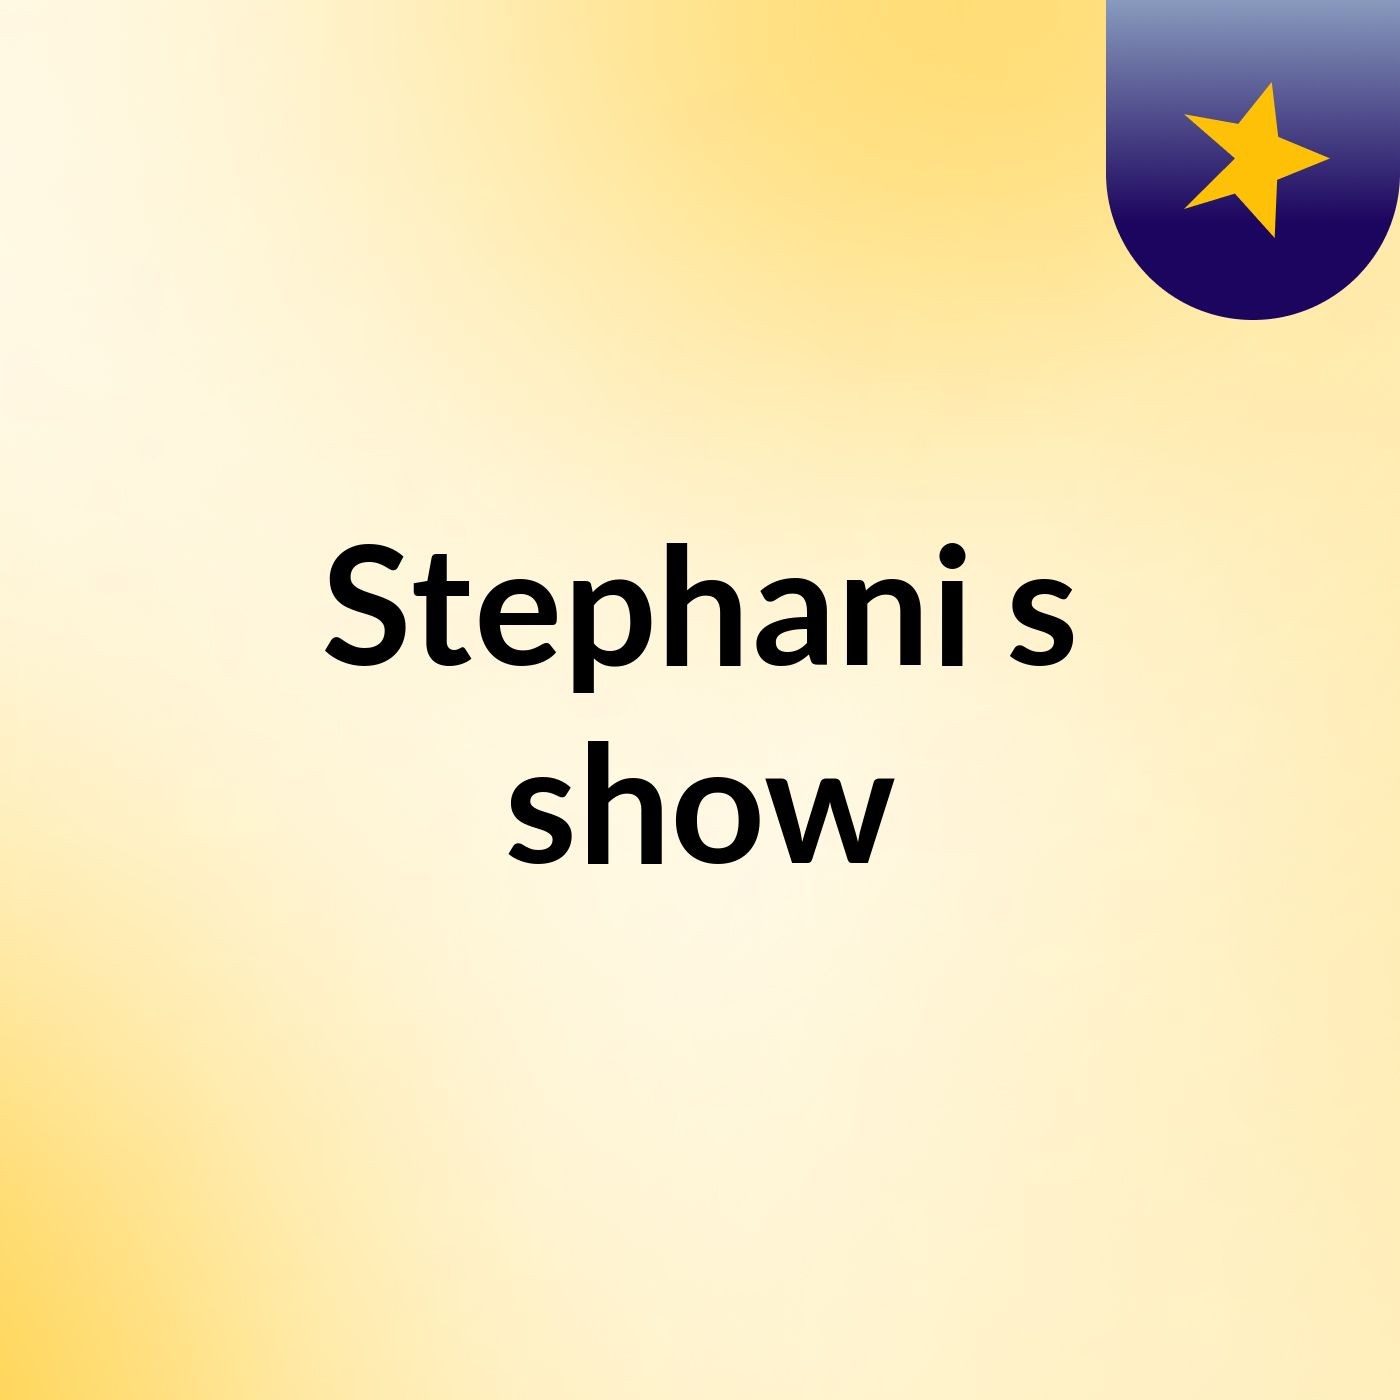 Stephani's show